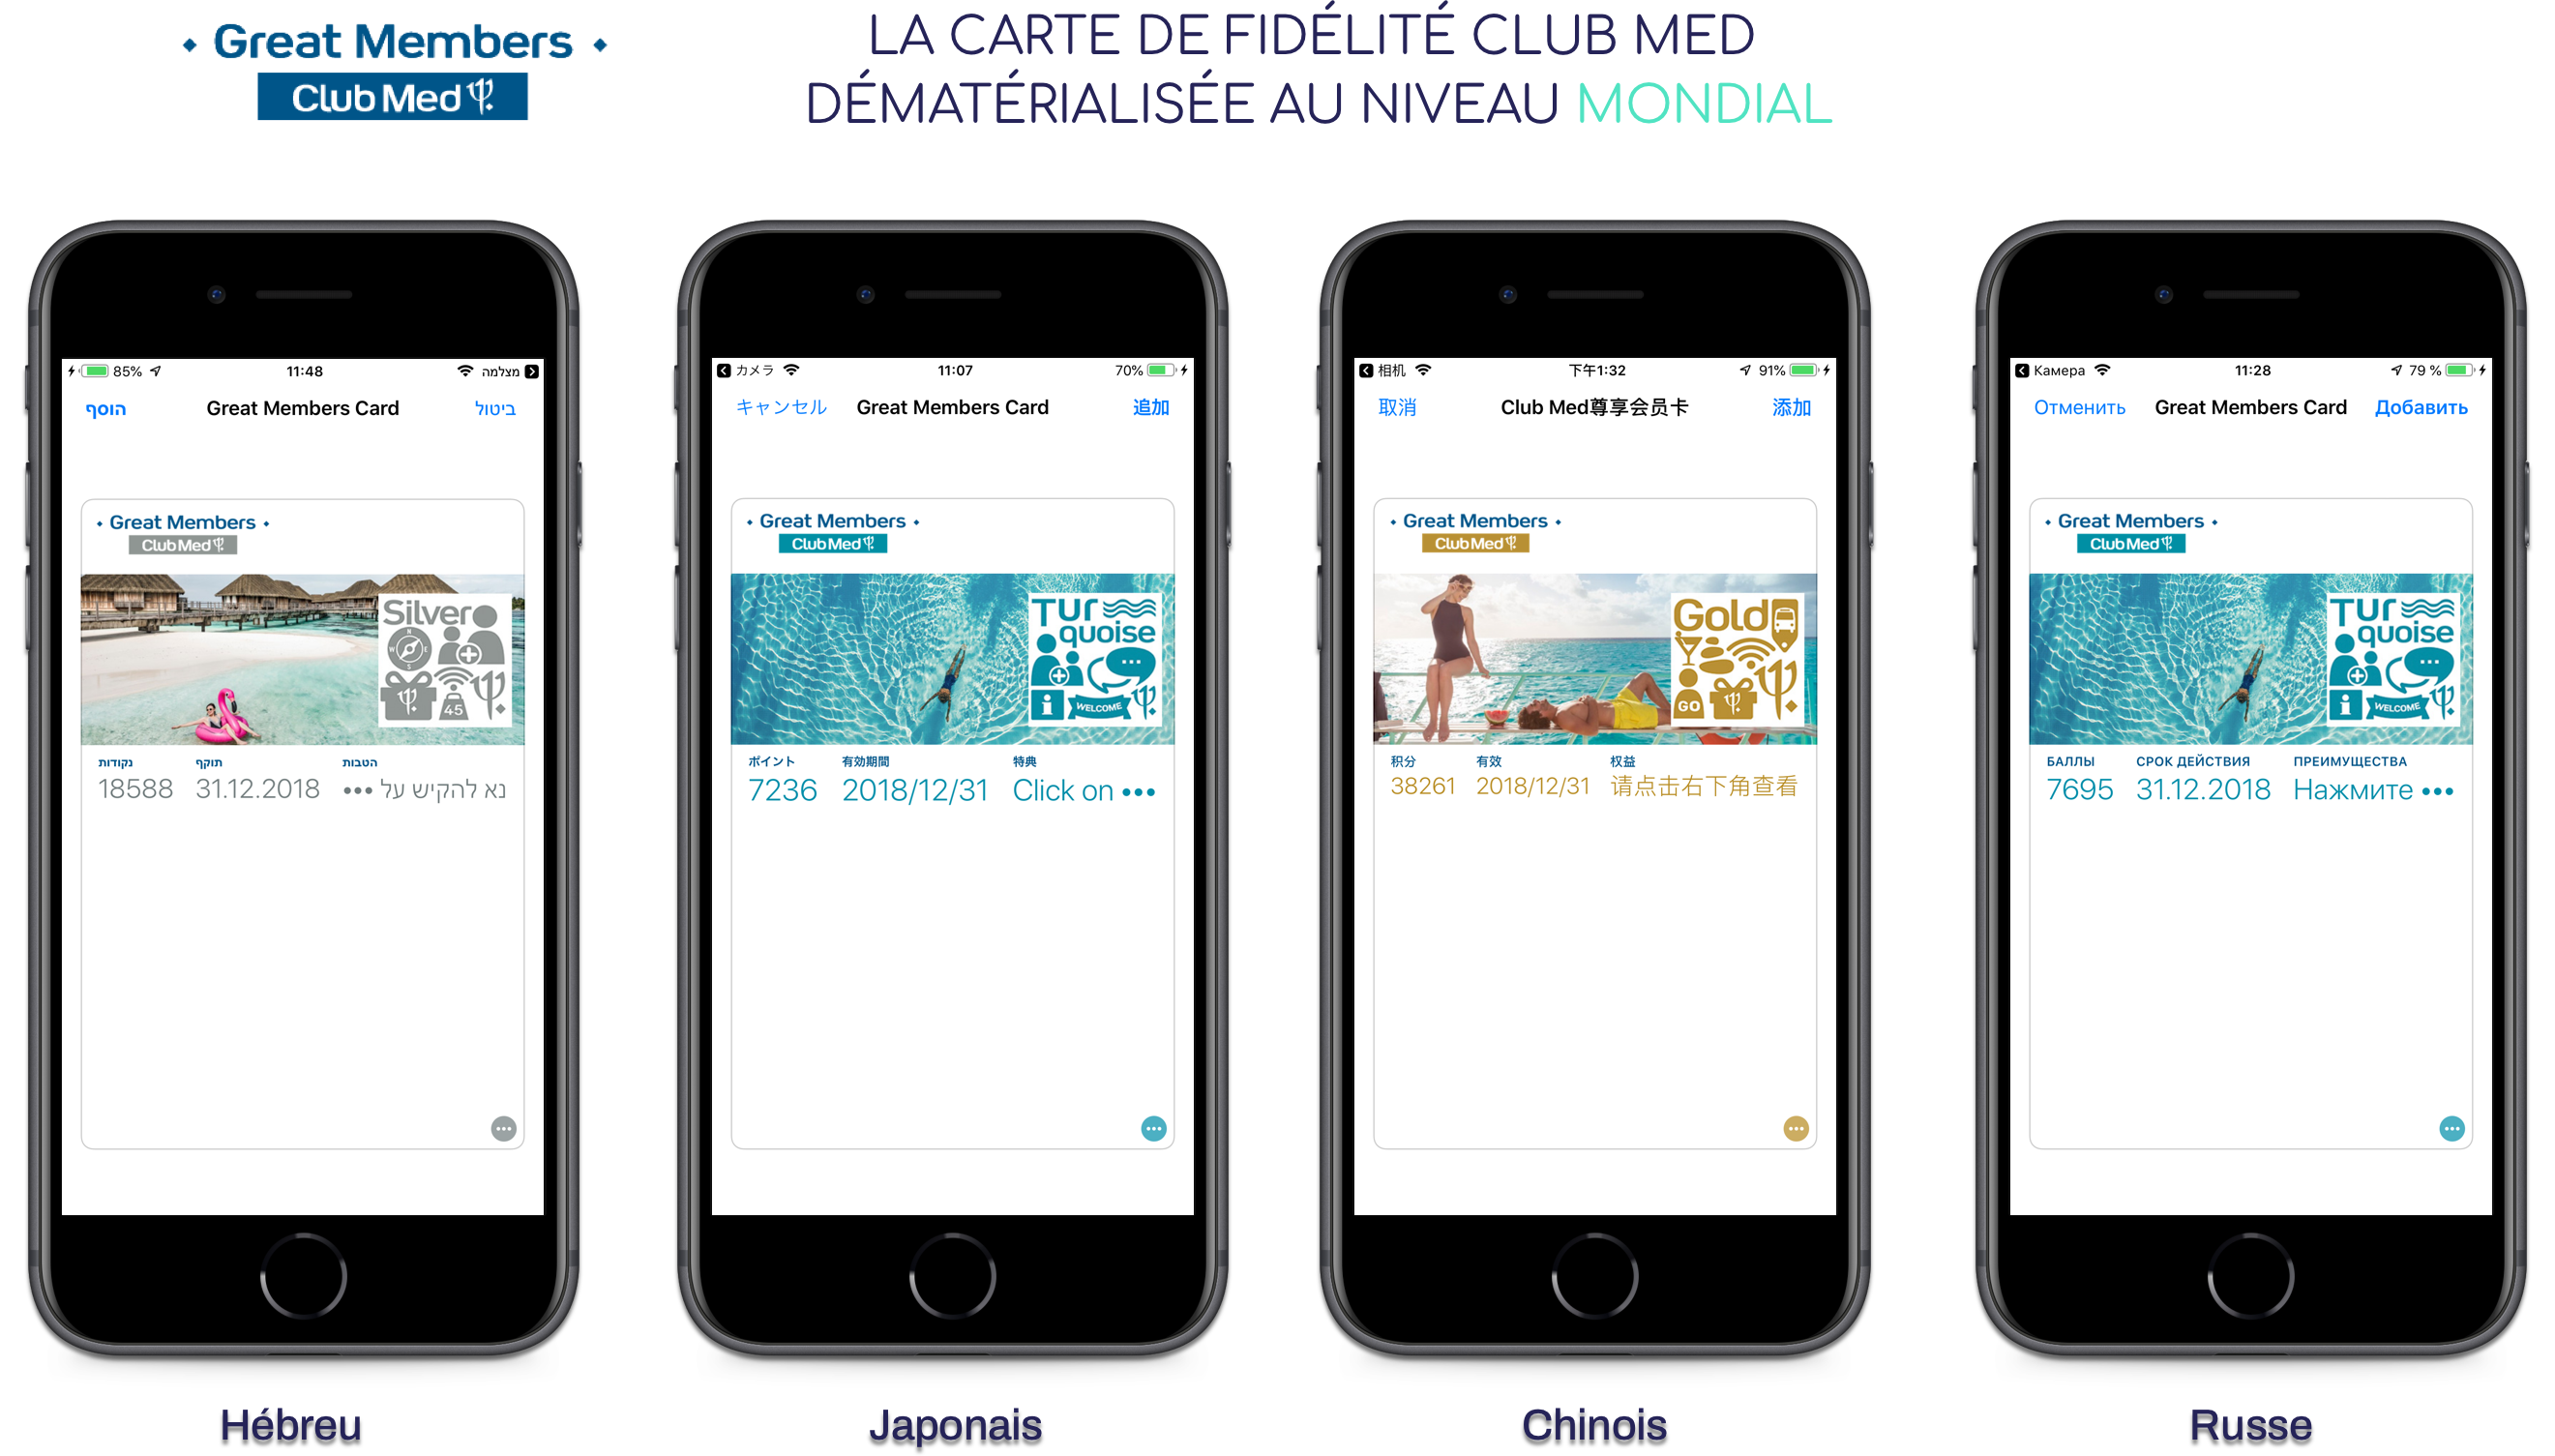 Club Med intègre les mobile wallet à sa stratégie mobile !